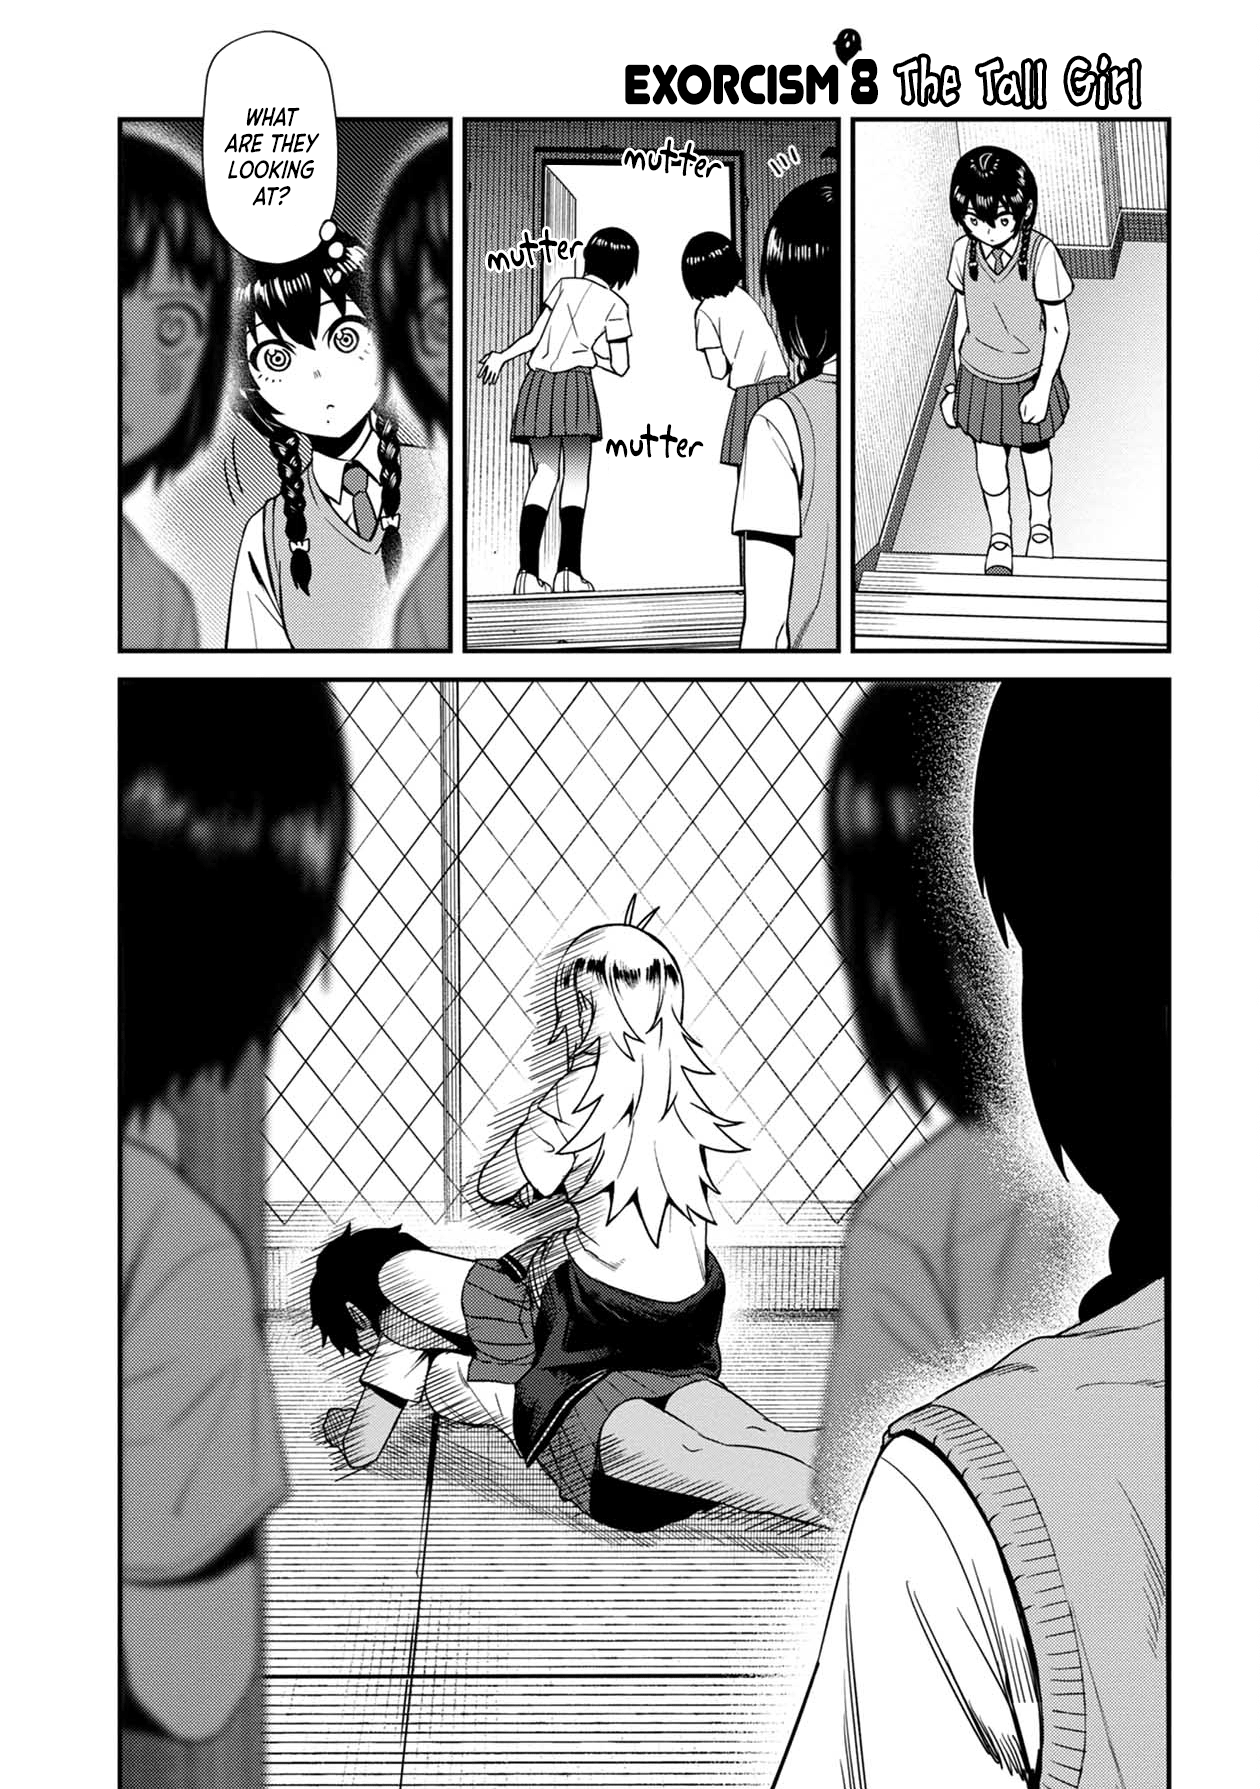 Bad Girl-Exorcist Reina - Page 1